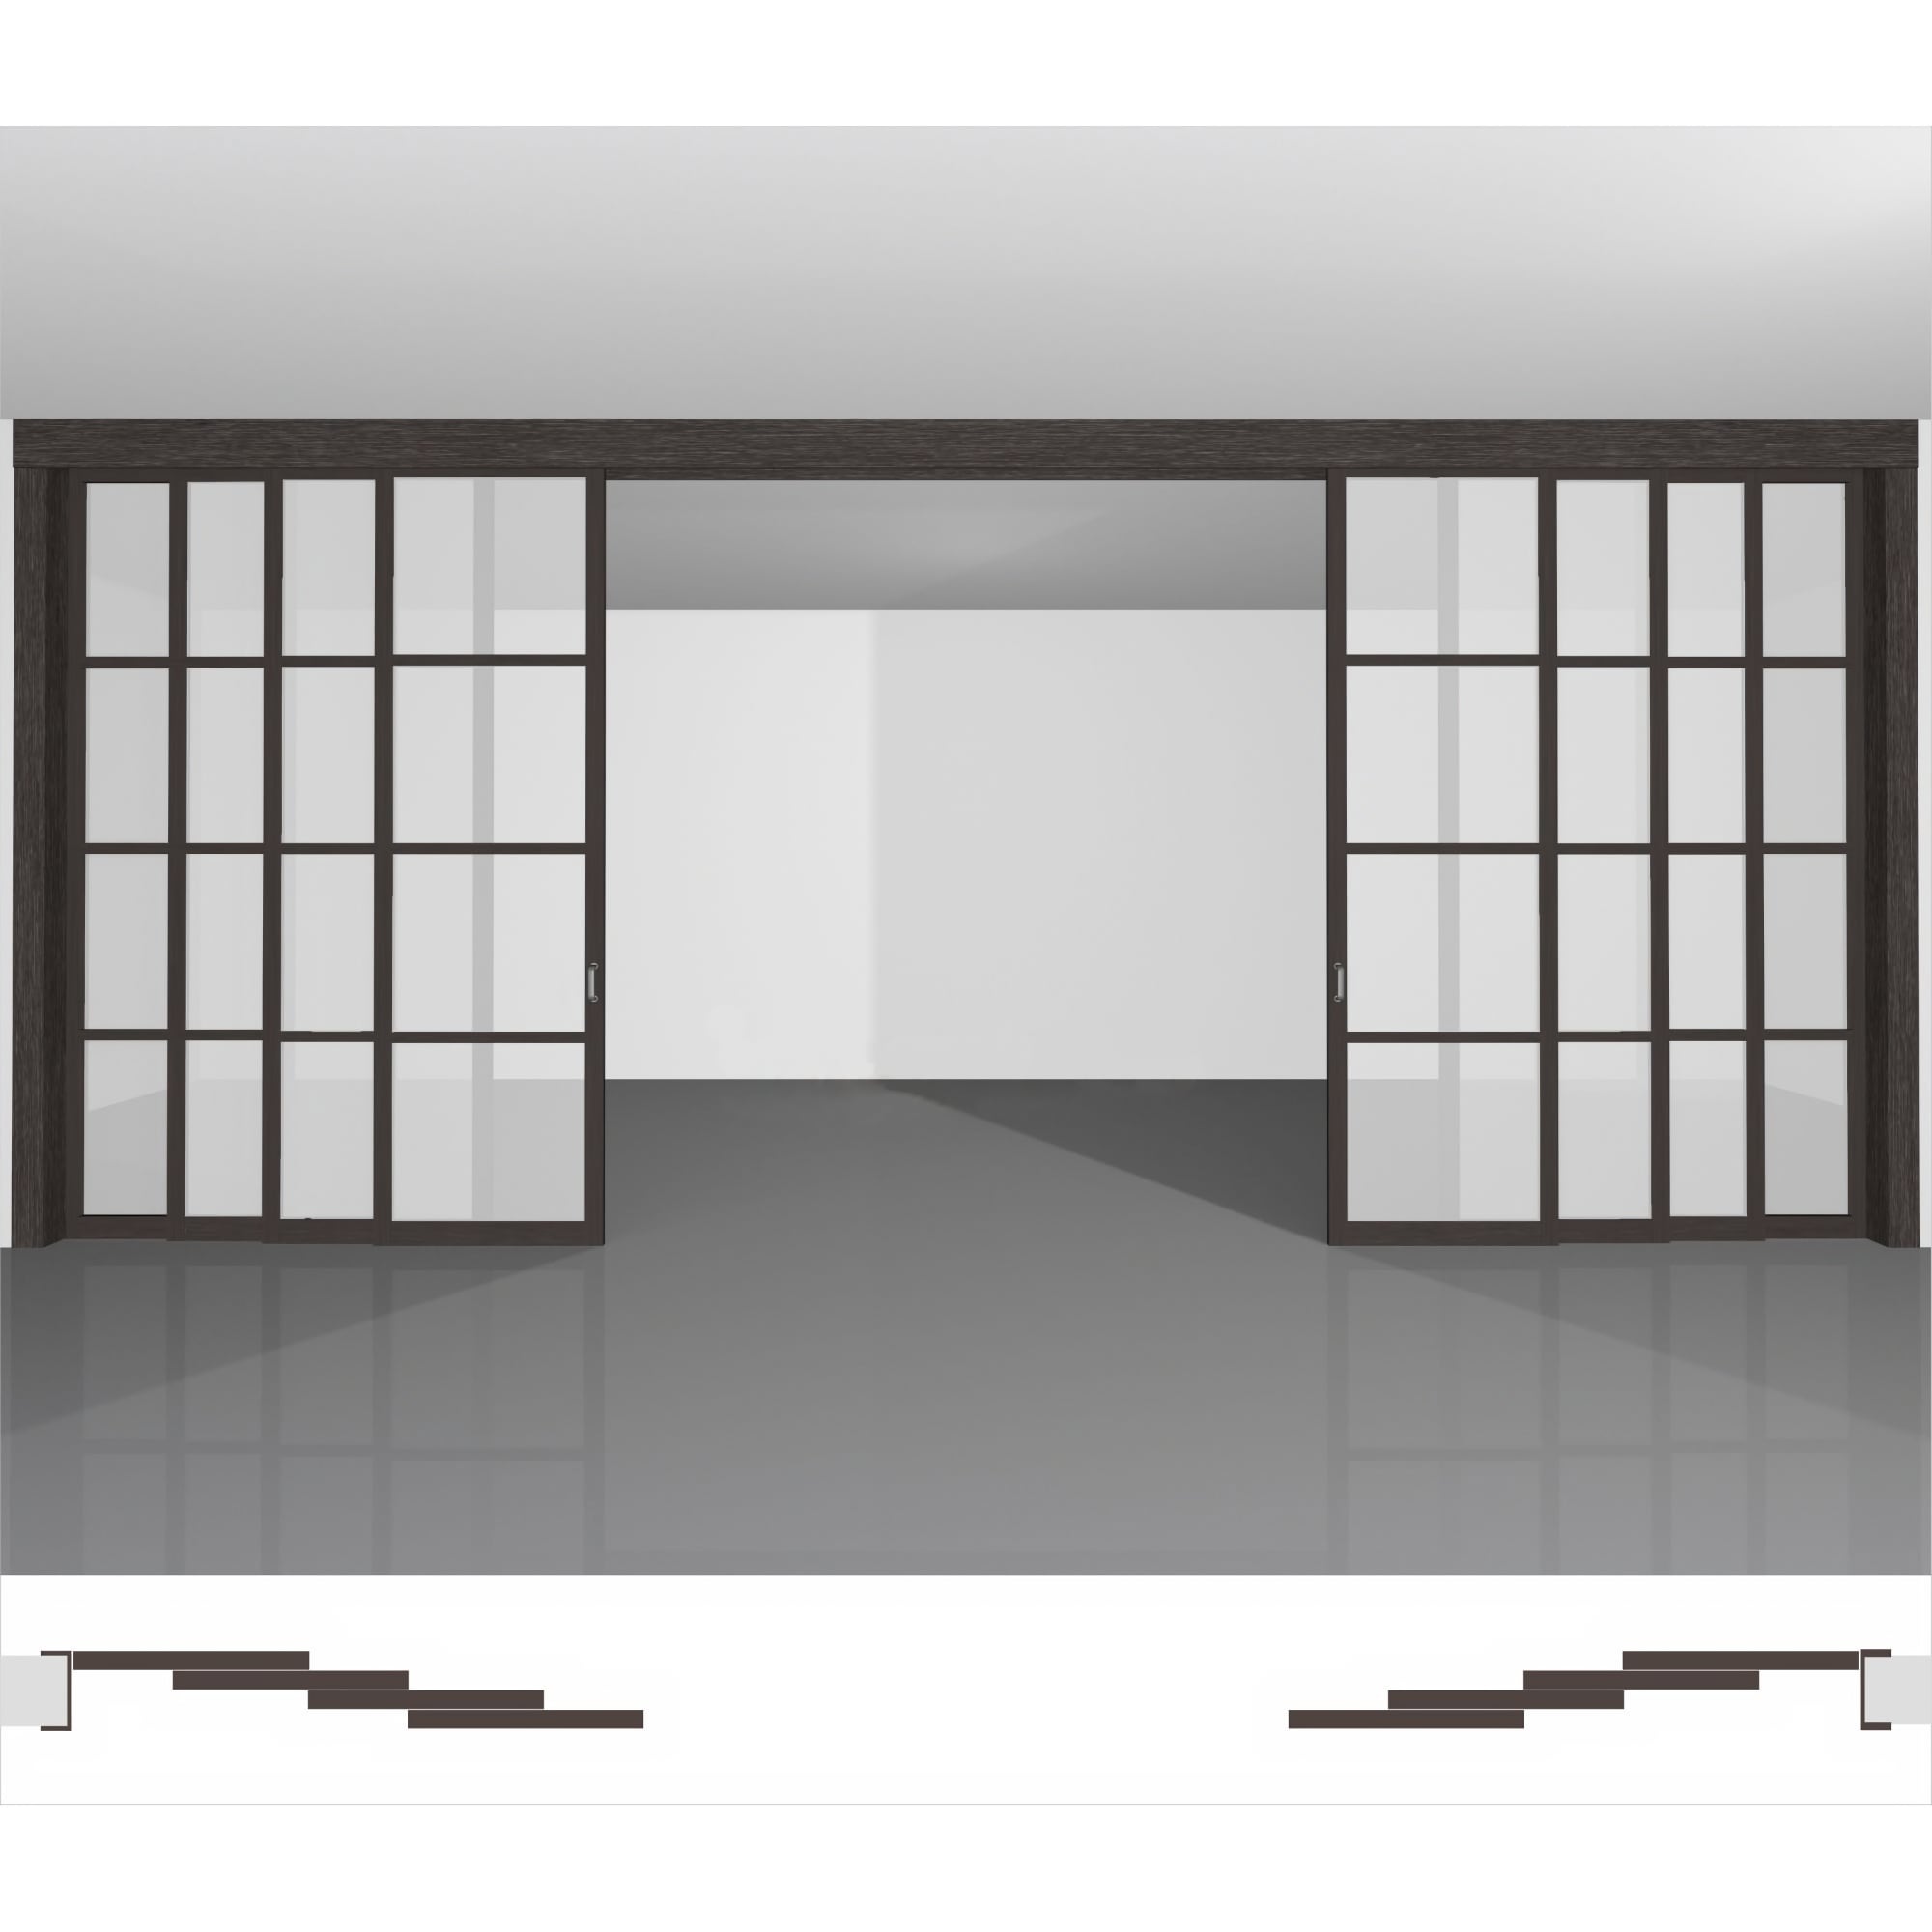 Міжкімнатна перегородка для створення затишної атмосфери в кімнаті, доступна до замовлення в інтернет-магазині - P04.3dv комплект з 8 полотен під стелю • висота до 2430 мм